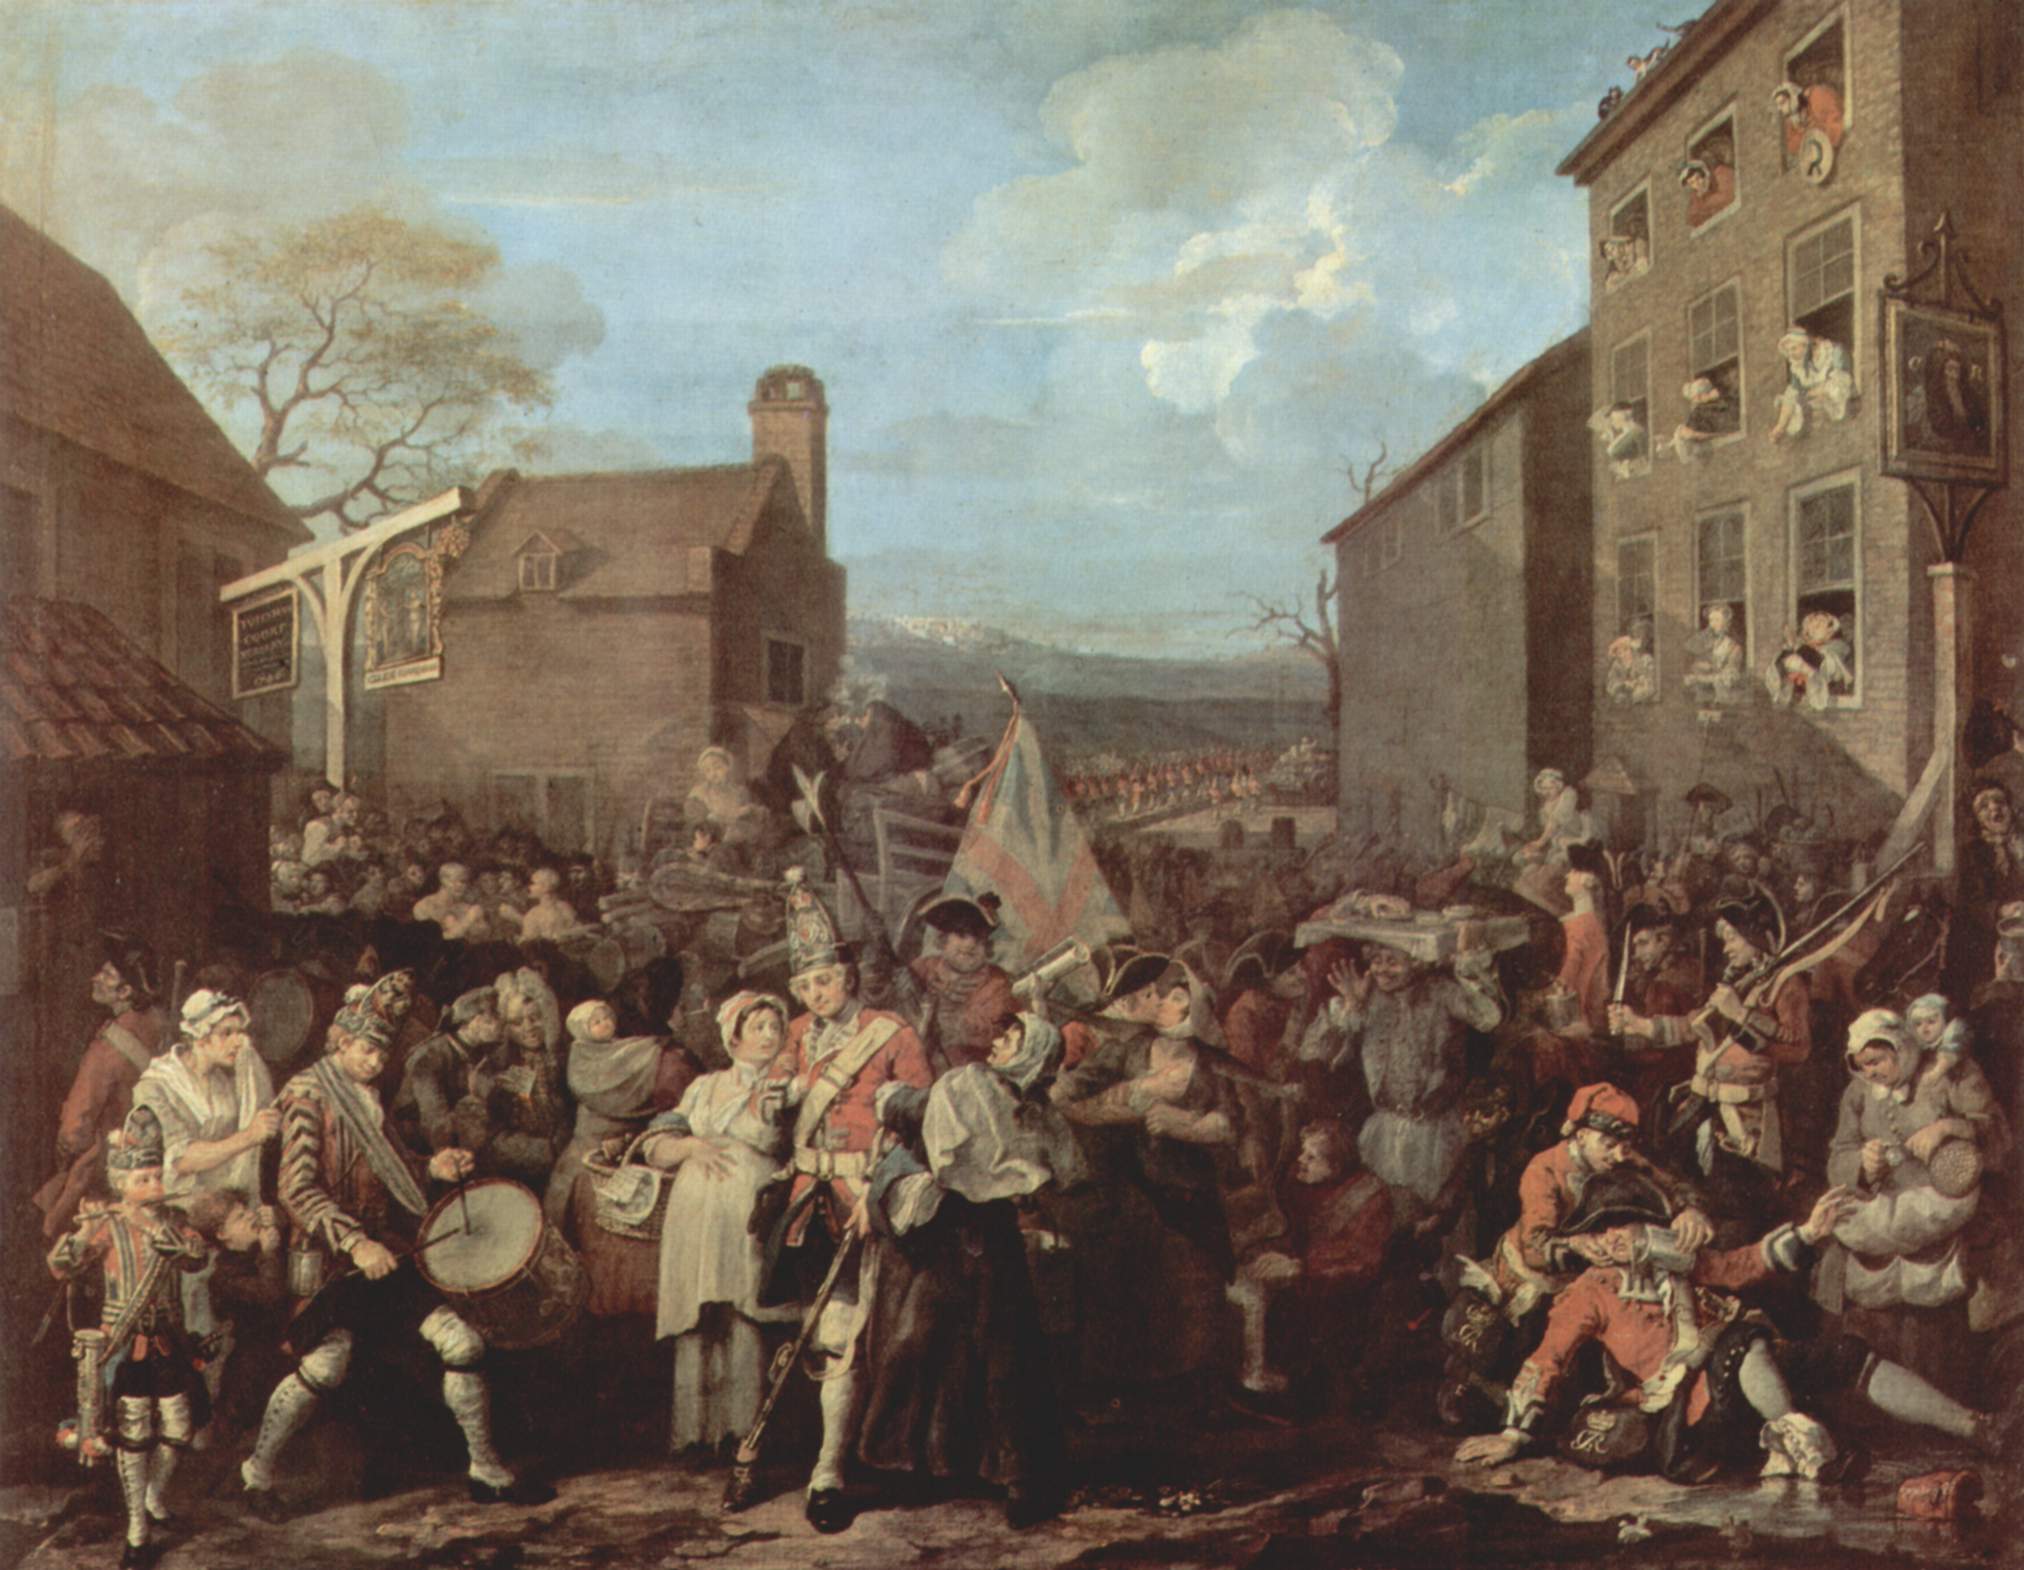 La marcia delle guardie a Finchley, di William Hogarth, 1750